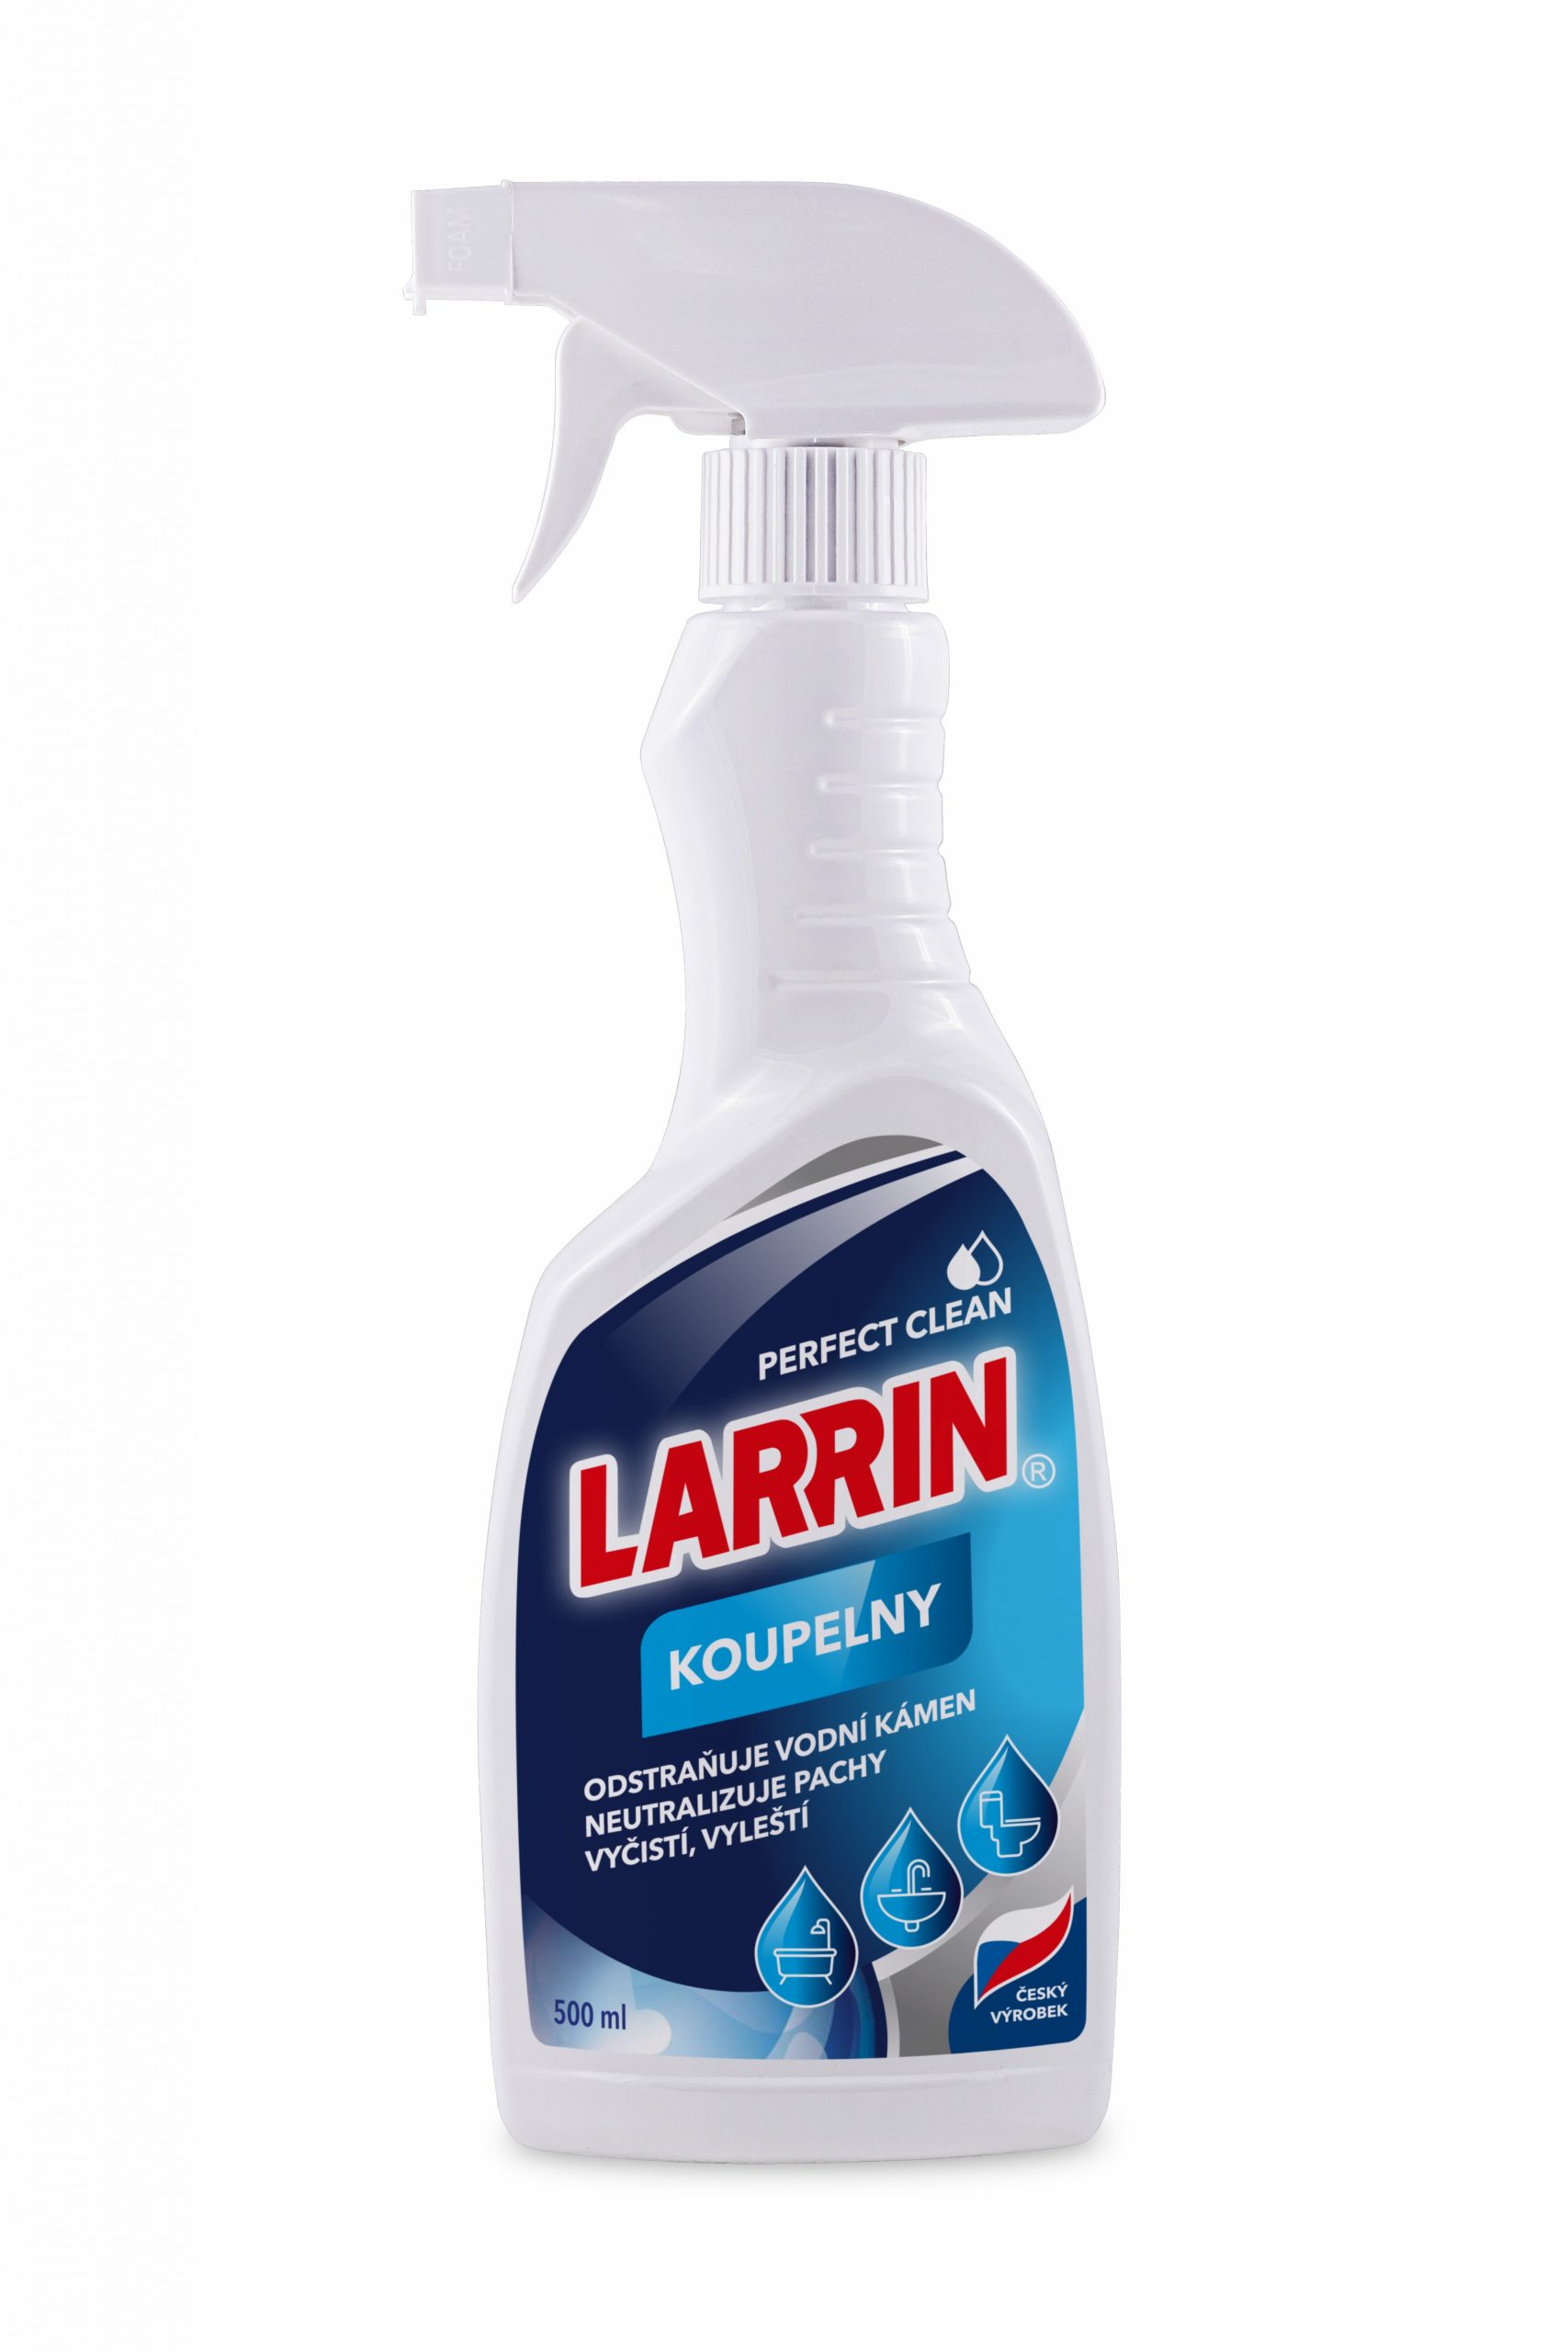 STYL Larrin kúpeľňa čistič s rozprašovačom 500 ml